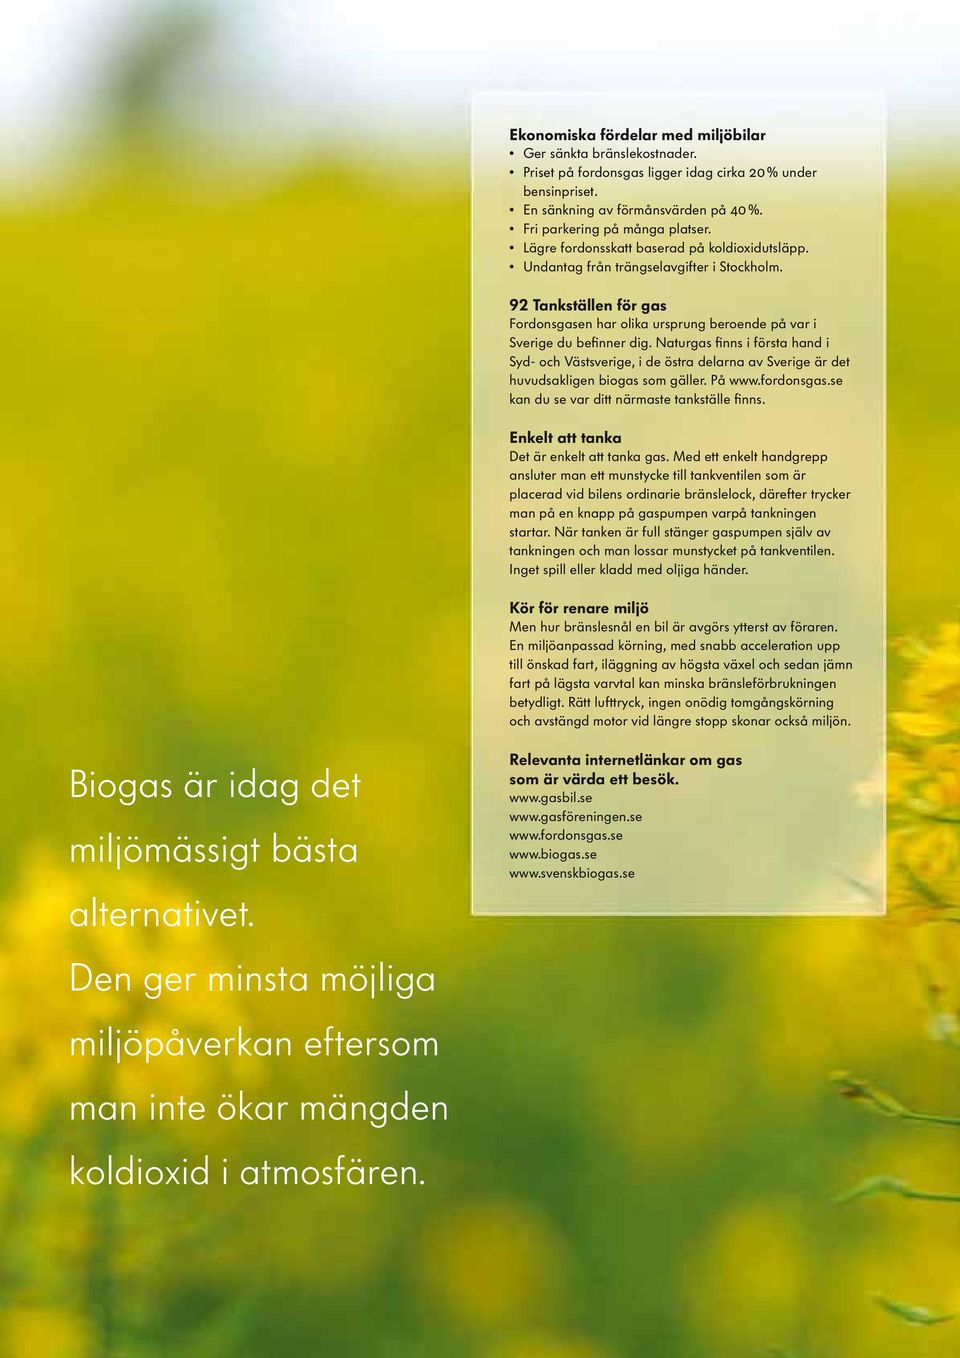 Naturgas finns i första hand i Syd- och Västsverige, i de östra delarna av Sverige är det huvudsakligen biogas som gäller. På www.fordonsgas.se kan du se var ditt närmaste tankställe finns.